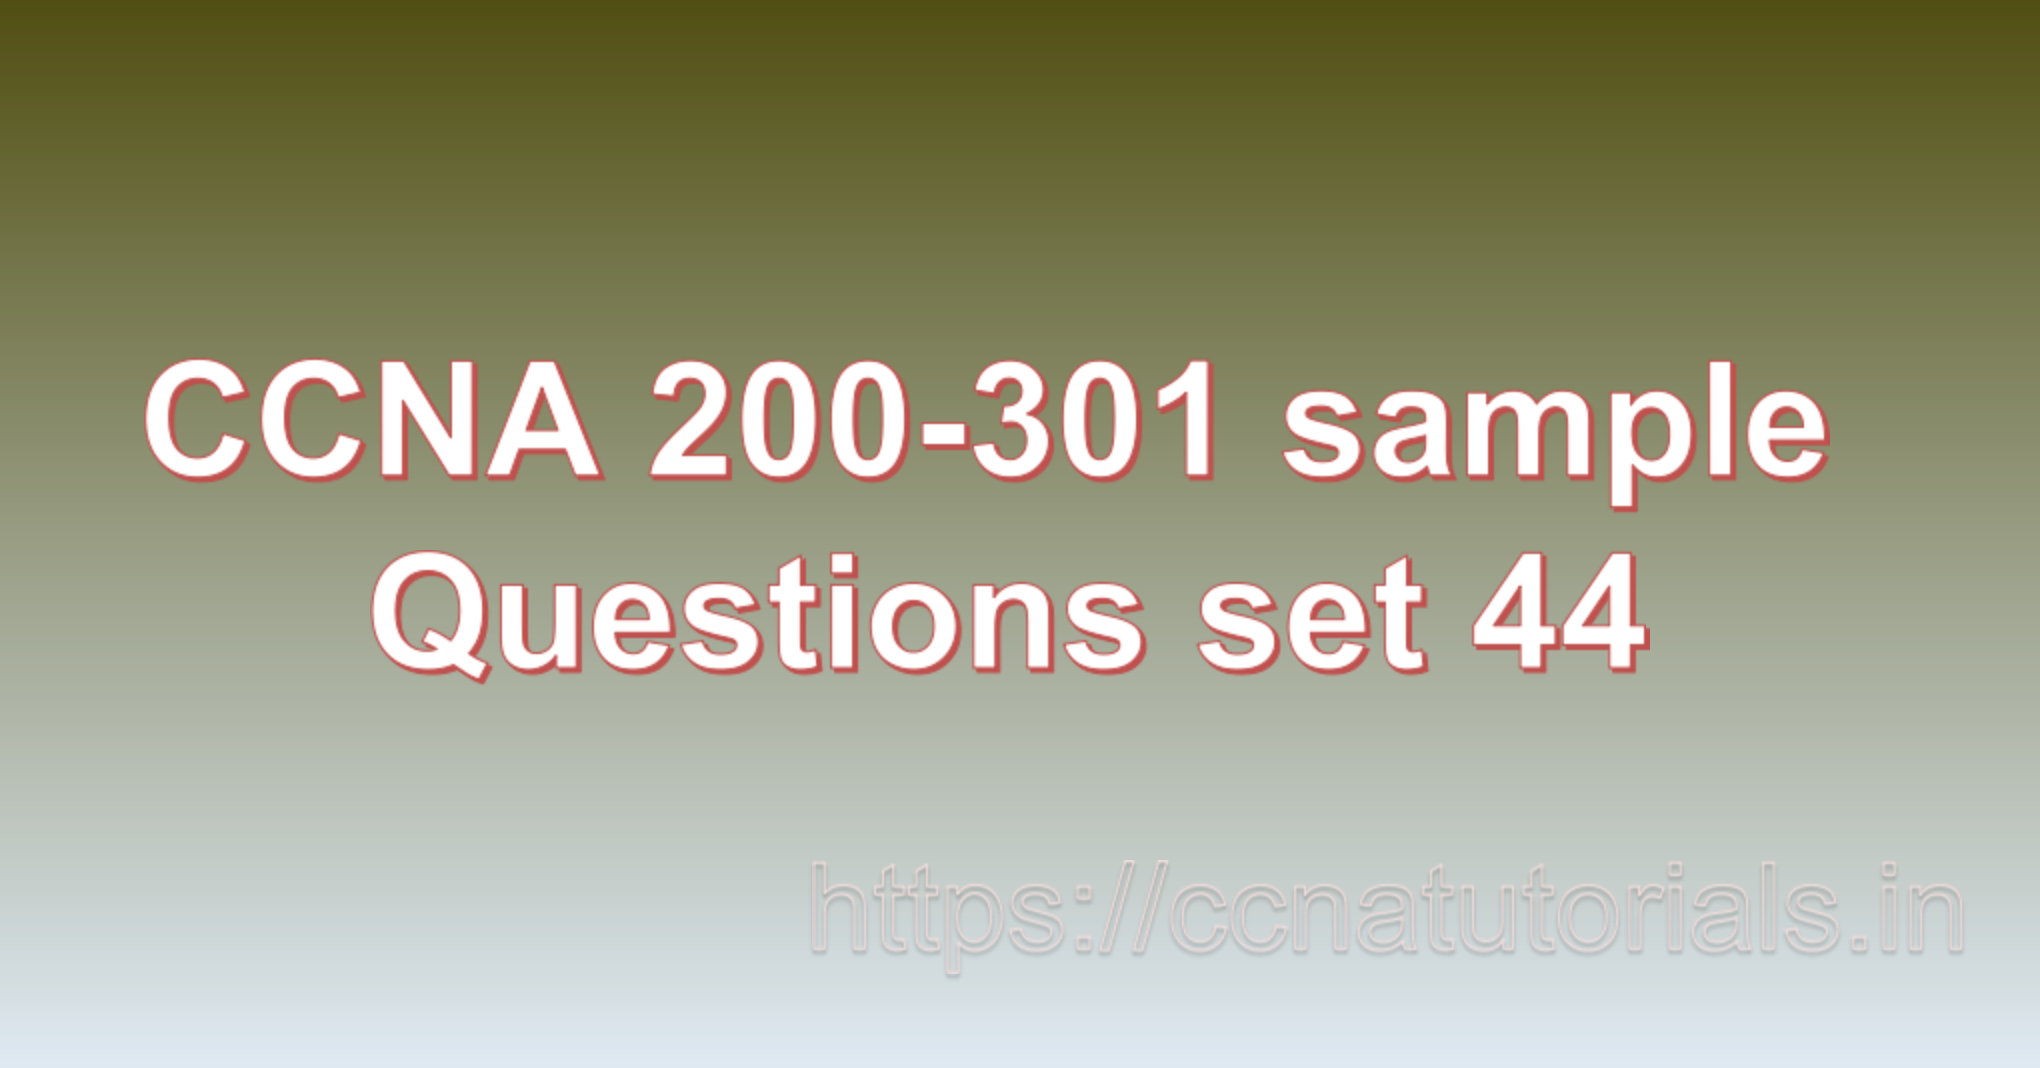 ccna sample questions set 44, ccna tutorials, CCNA Exam, ccna